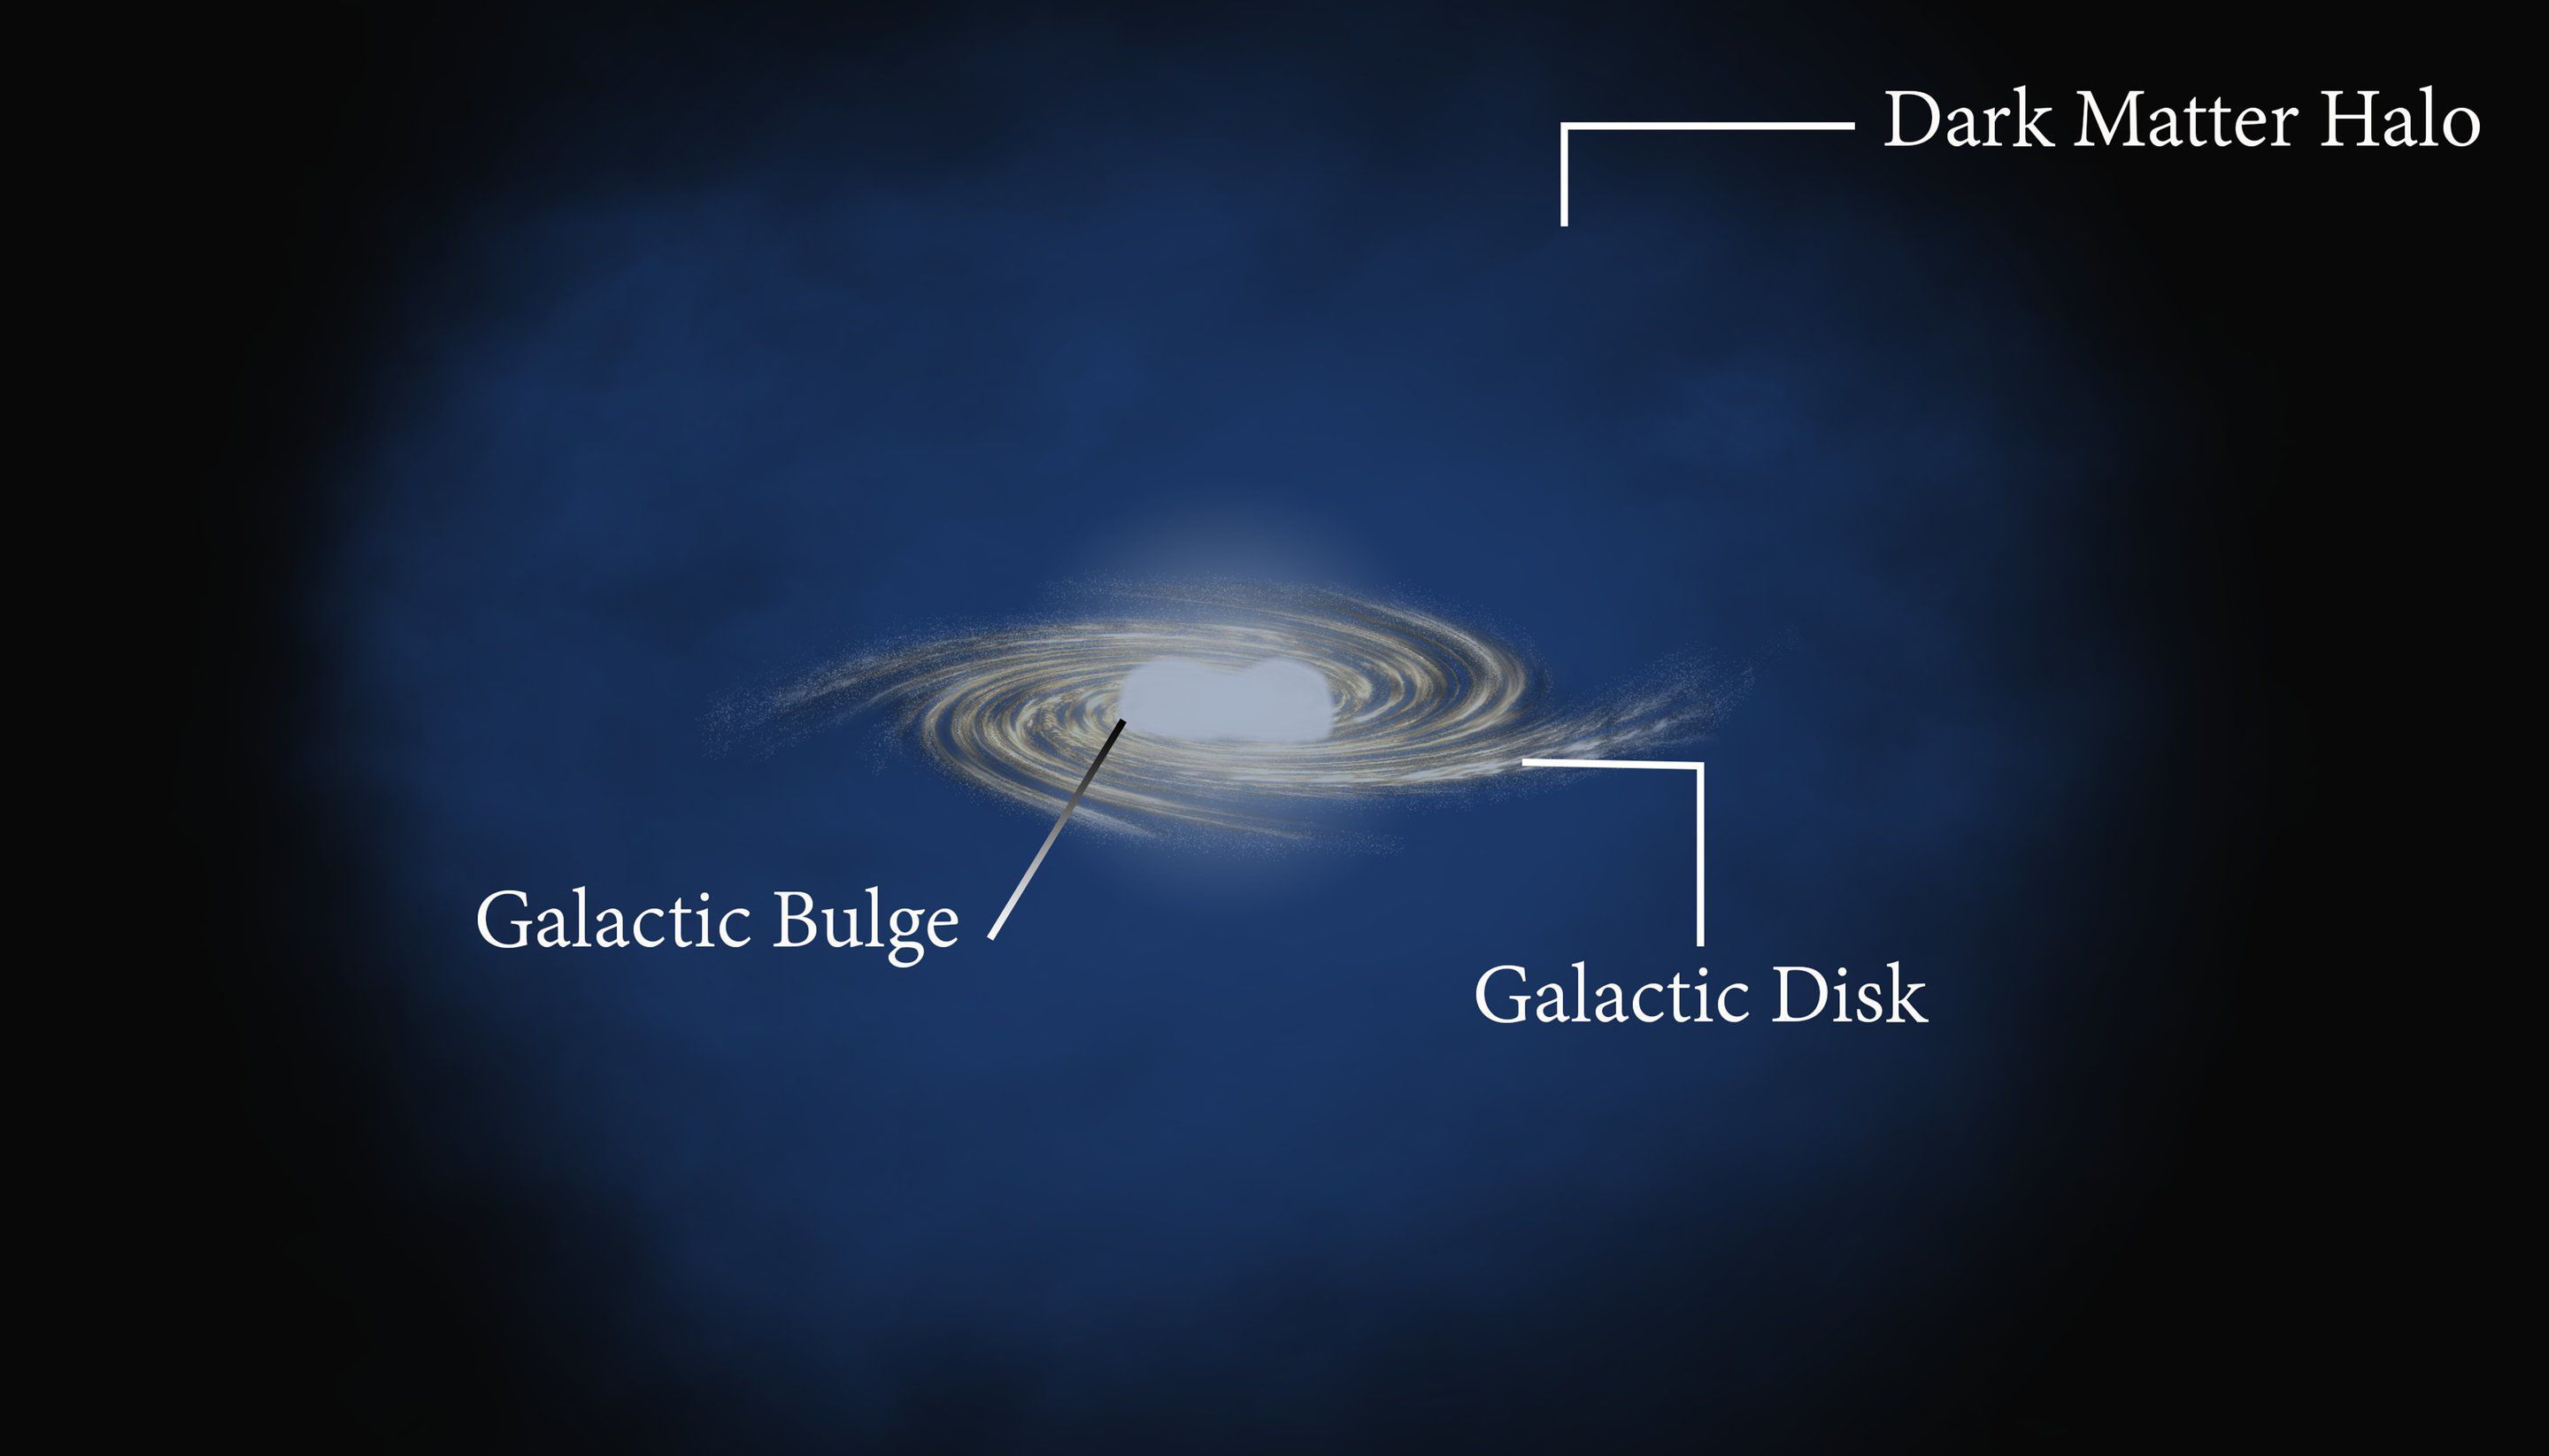 Гамма-излучение балджа Галактики не связано с темной материей